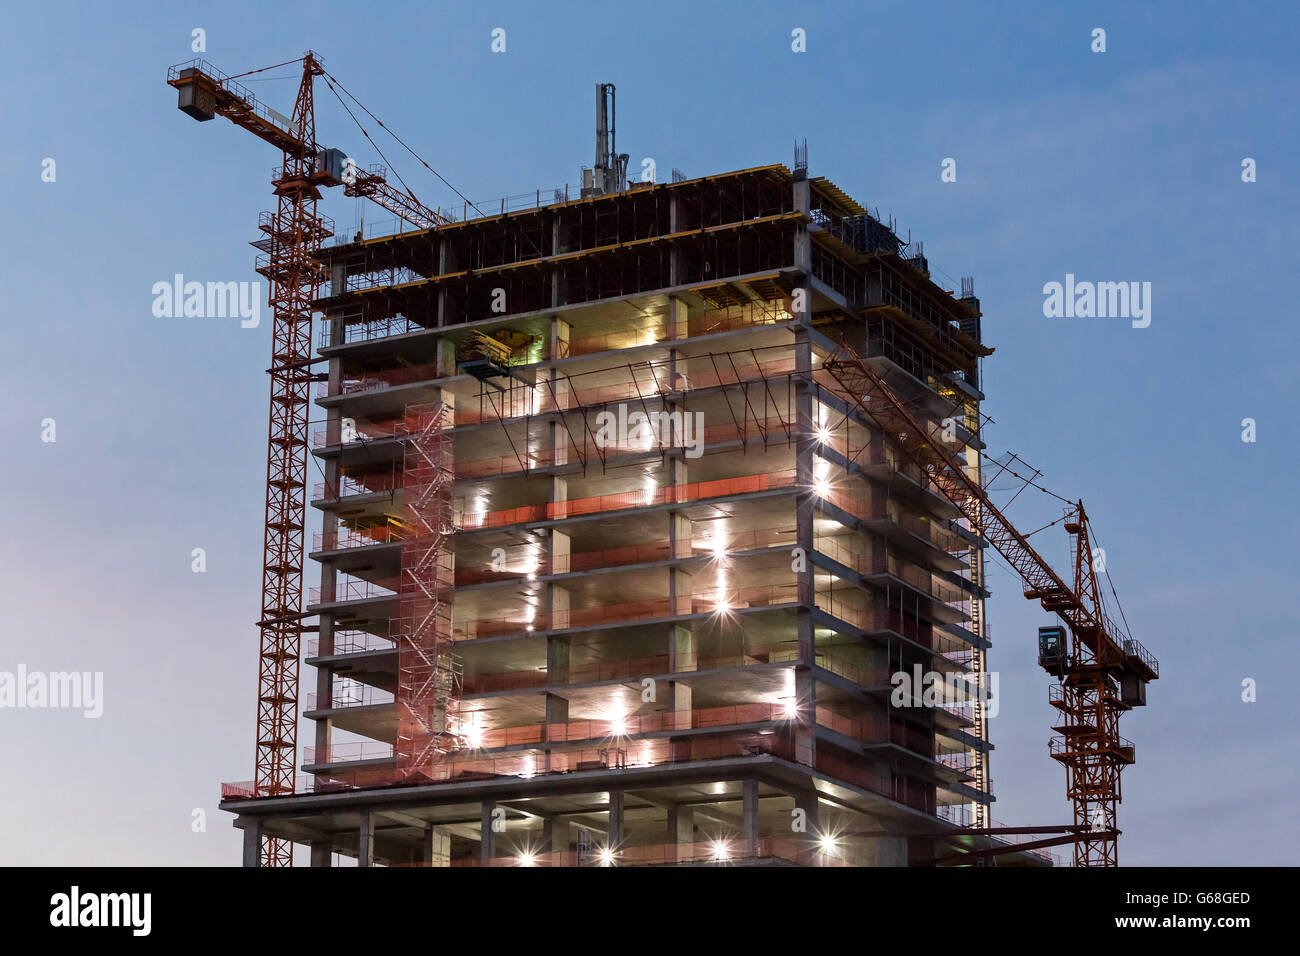 Edificio de hormigón de gran altura con grúas de construcción en penumbra Foto de stock